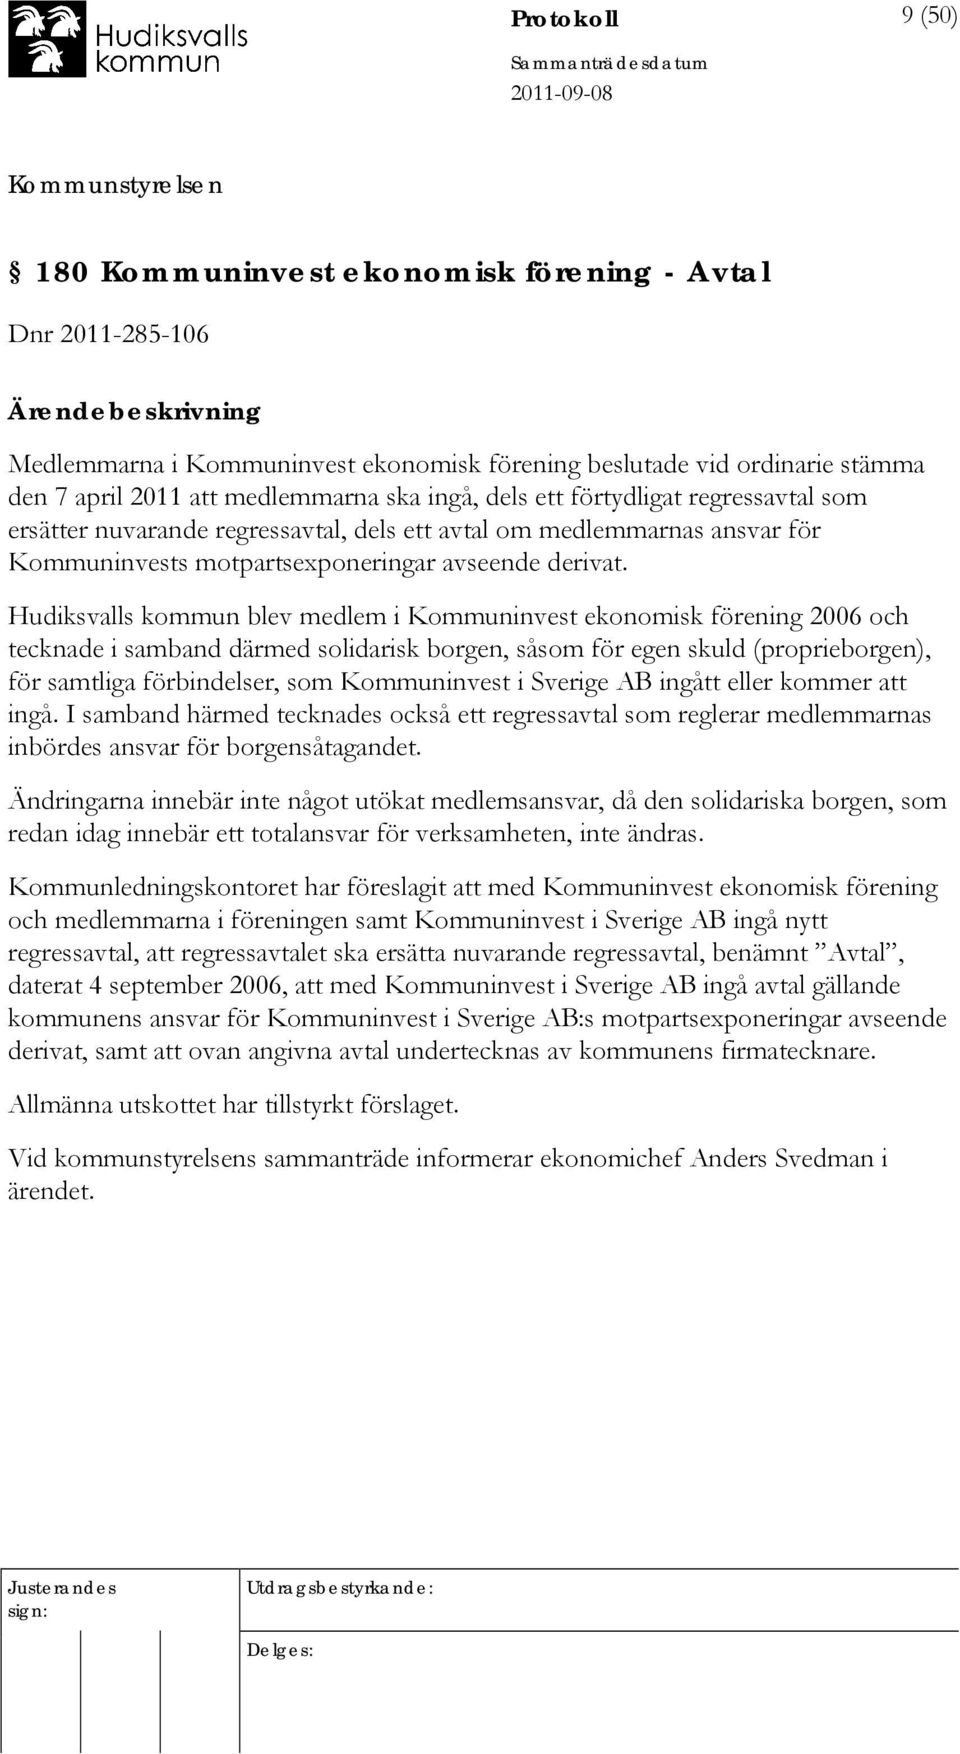 Hudiksvalls kommun blev medlem i Kommuninvest ekonomisk förening 2006 och tecknade i samband därmed solidarisk borgen, såsom för egen skuld (proprieborgen), för samtliga förbindelser, som